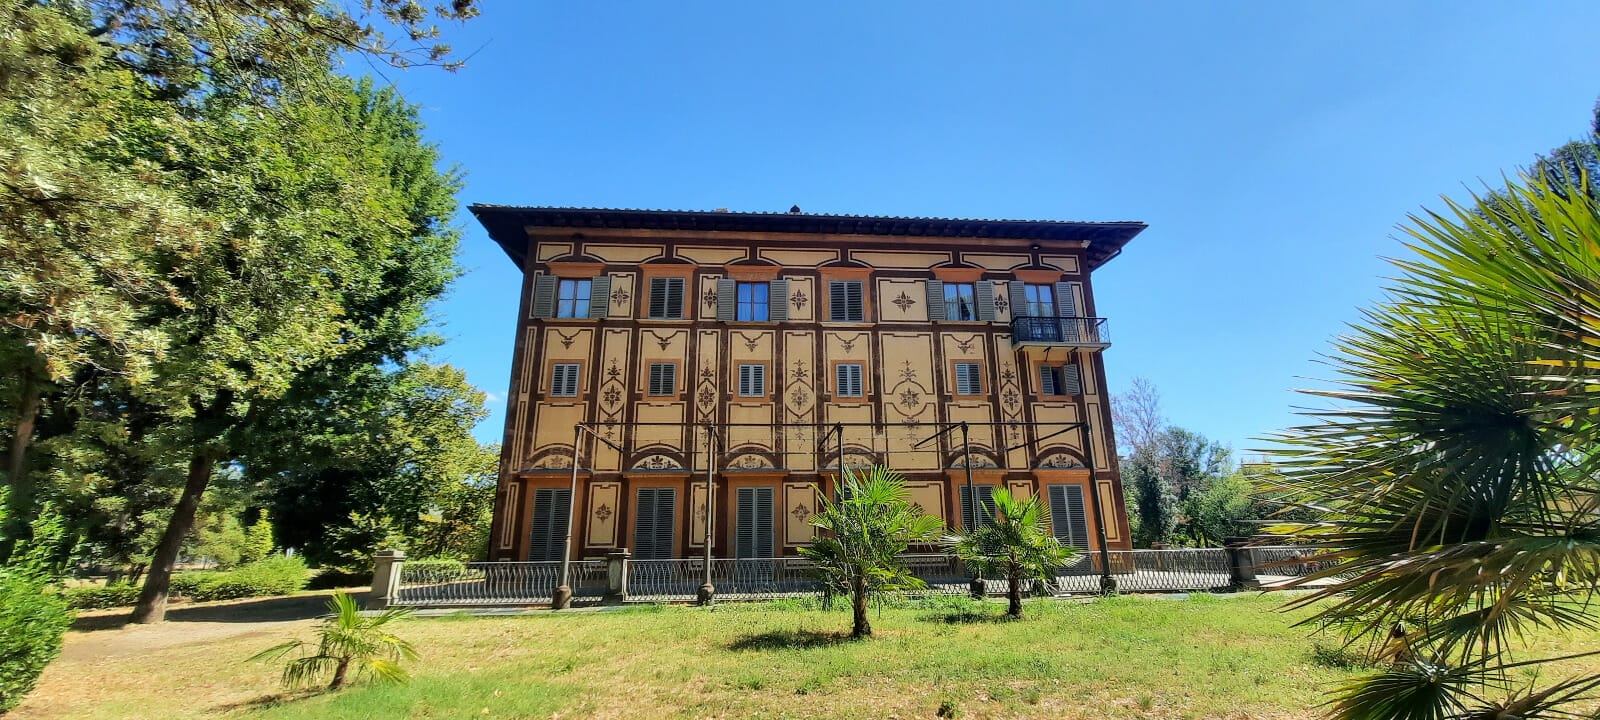 Villa Favard, al via i lavori di restauro da un milione di euro